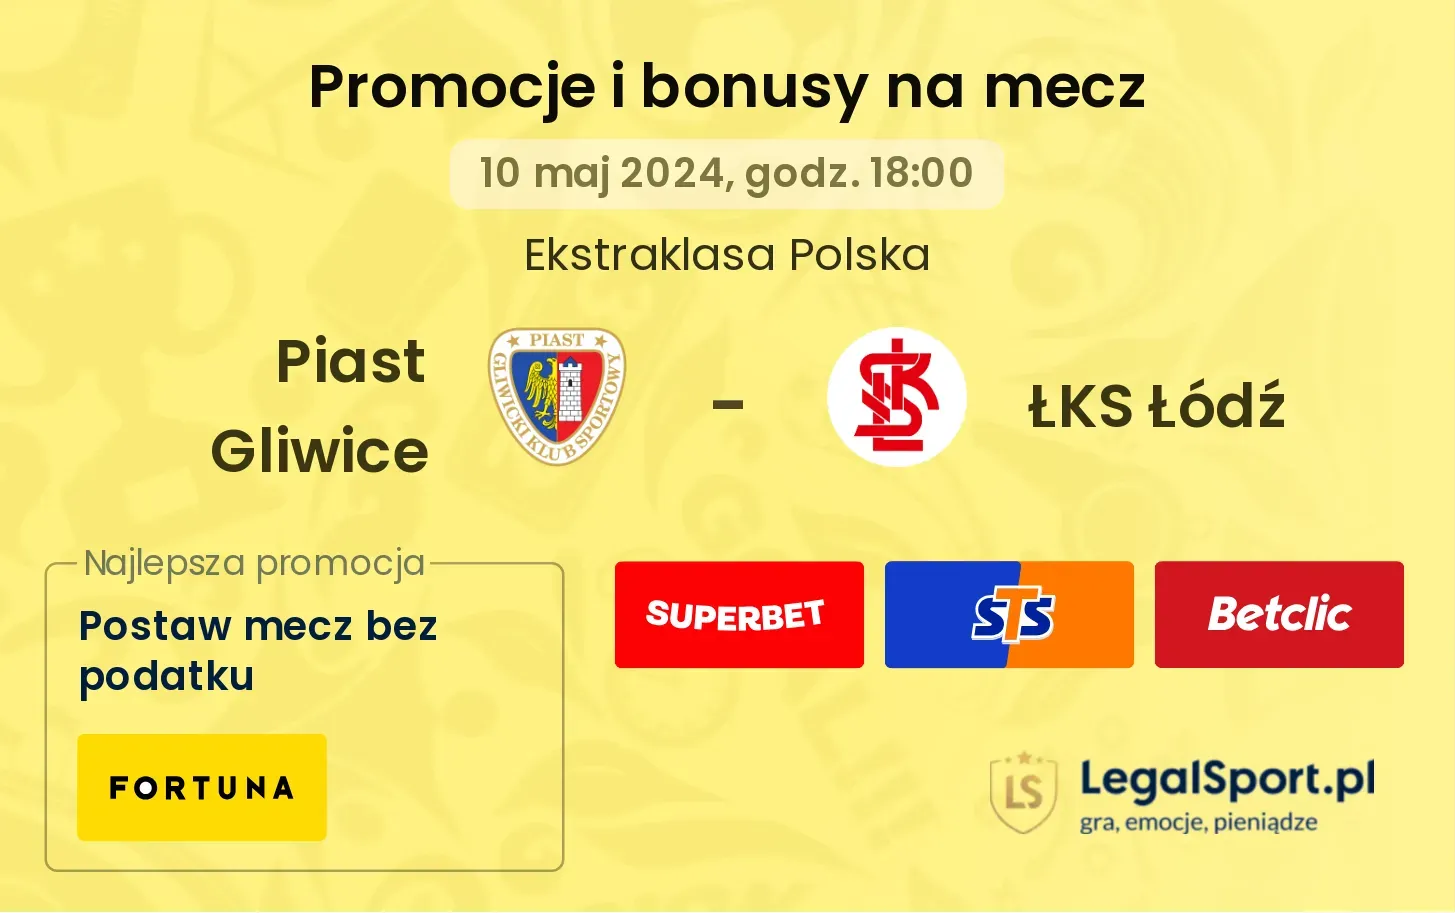 Piast Gliwice - ŁKS Łódź promocje bonusy na mecz